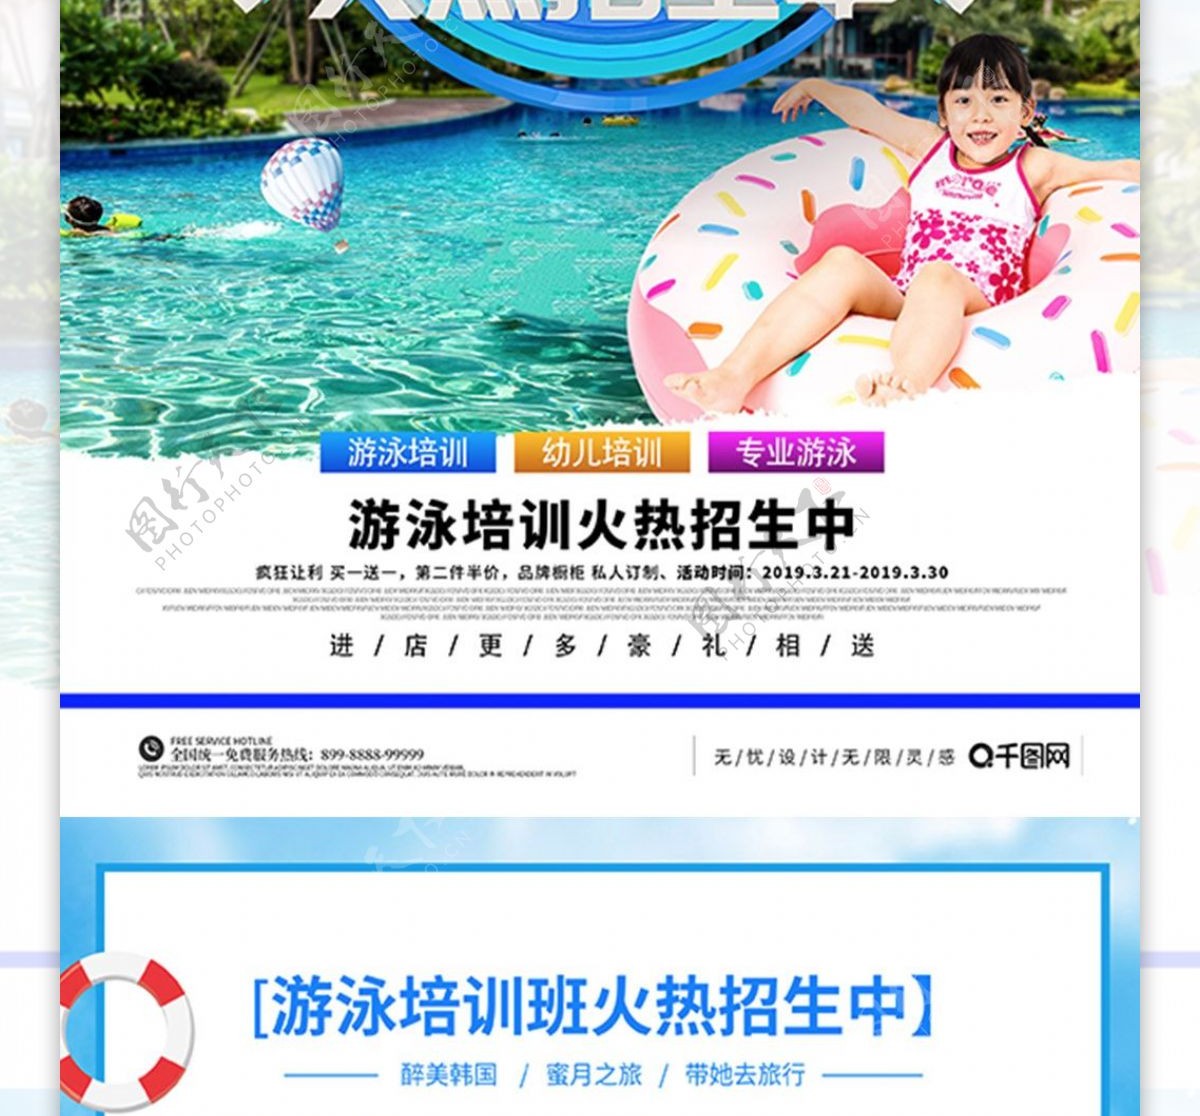 C4D专业游泳培训班招生蓝色宣传海报